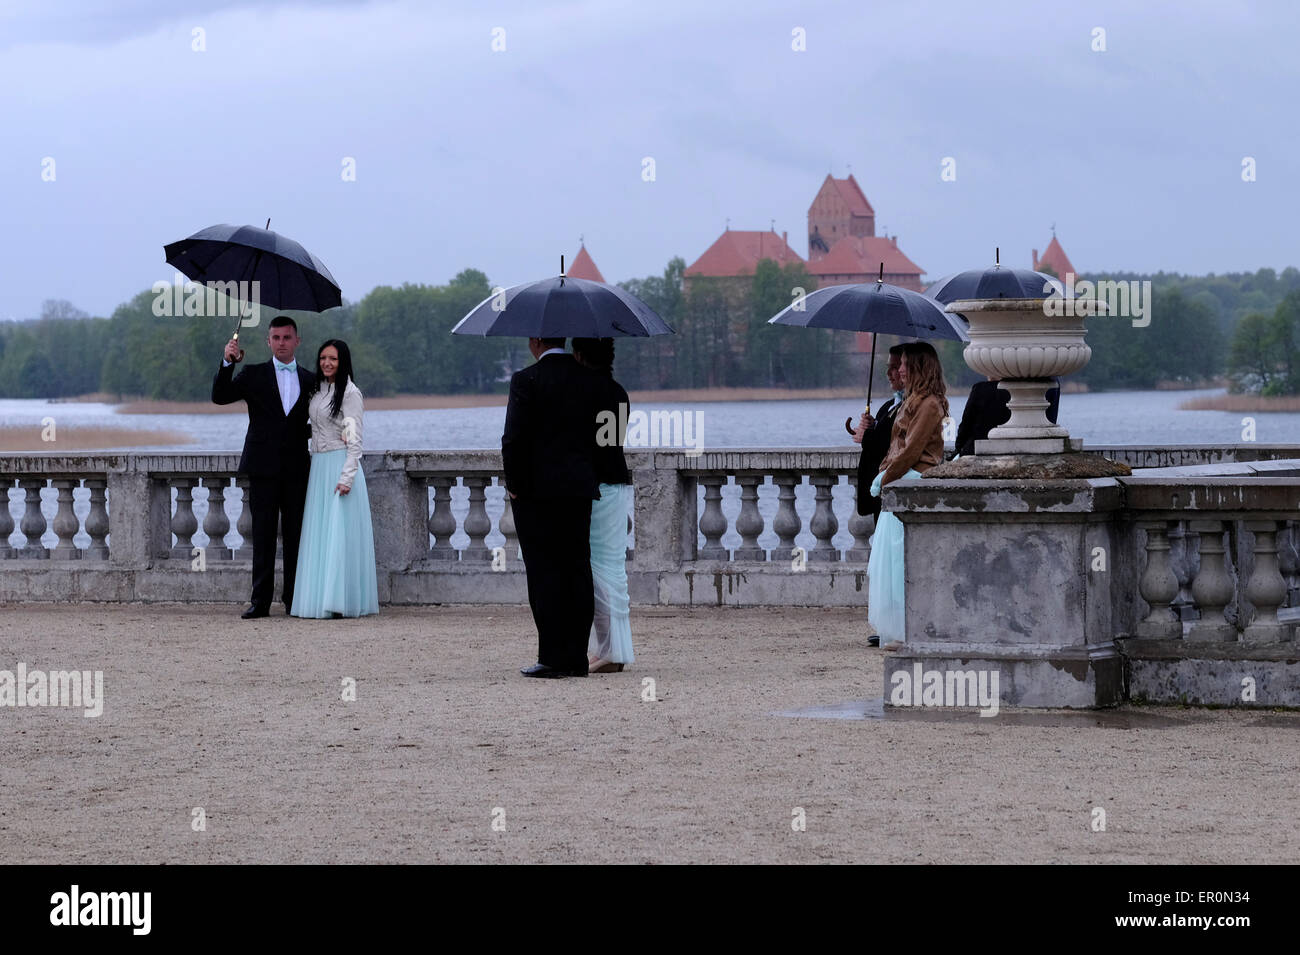 Paare in eleganter Kleidung, die während einer Fotosession vor der Hochzeit im Garten des Uzutrakis Manor Palace posieren, einem Wohnsitz aus dem späten 19. Jahrhundert der Familie Tyszkiewicz in Uzutrakis, am Ufer des Galve-Sees, gegenüber dem berühmten Schloss Trakai. Litauen Stockfoto